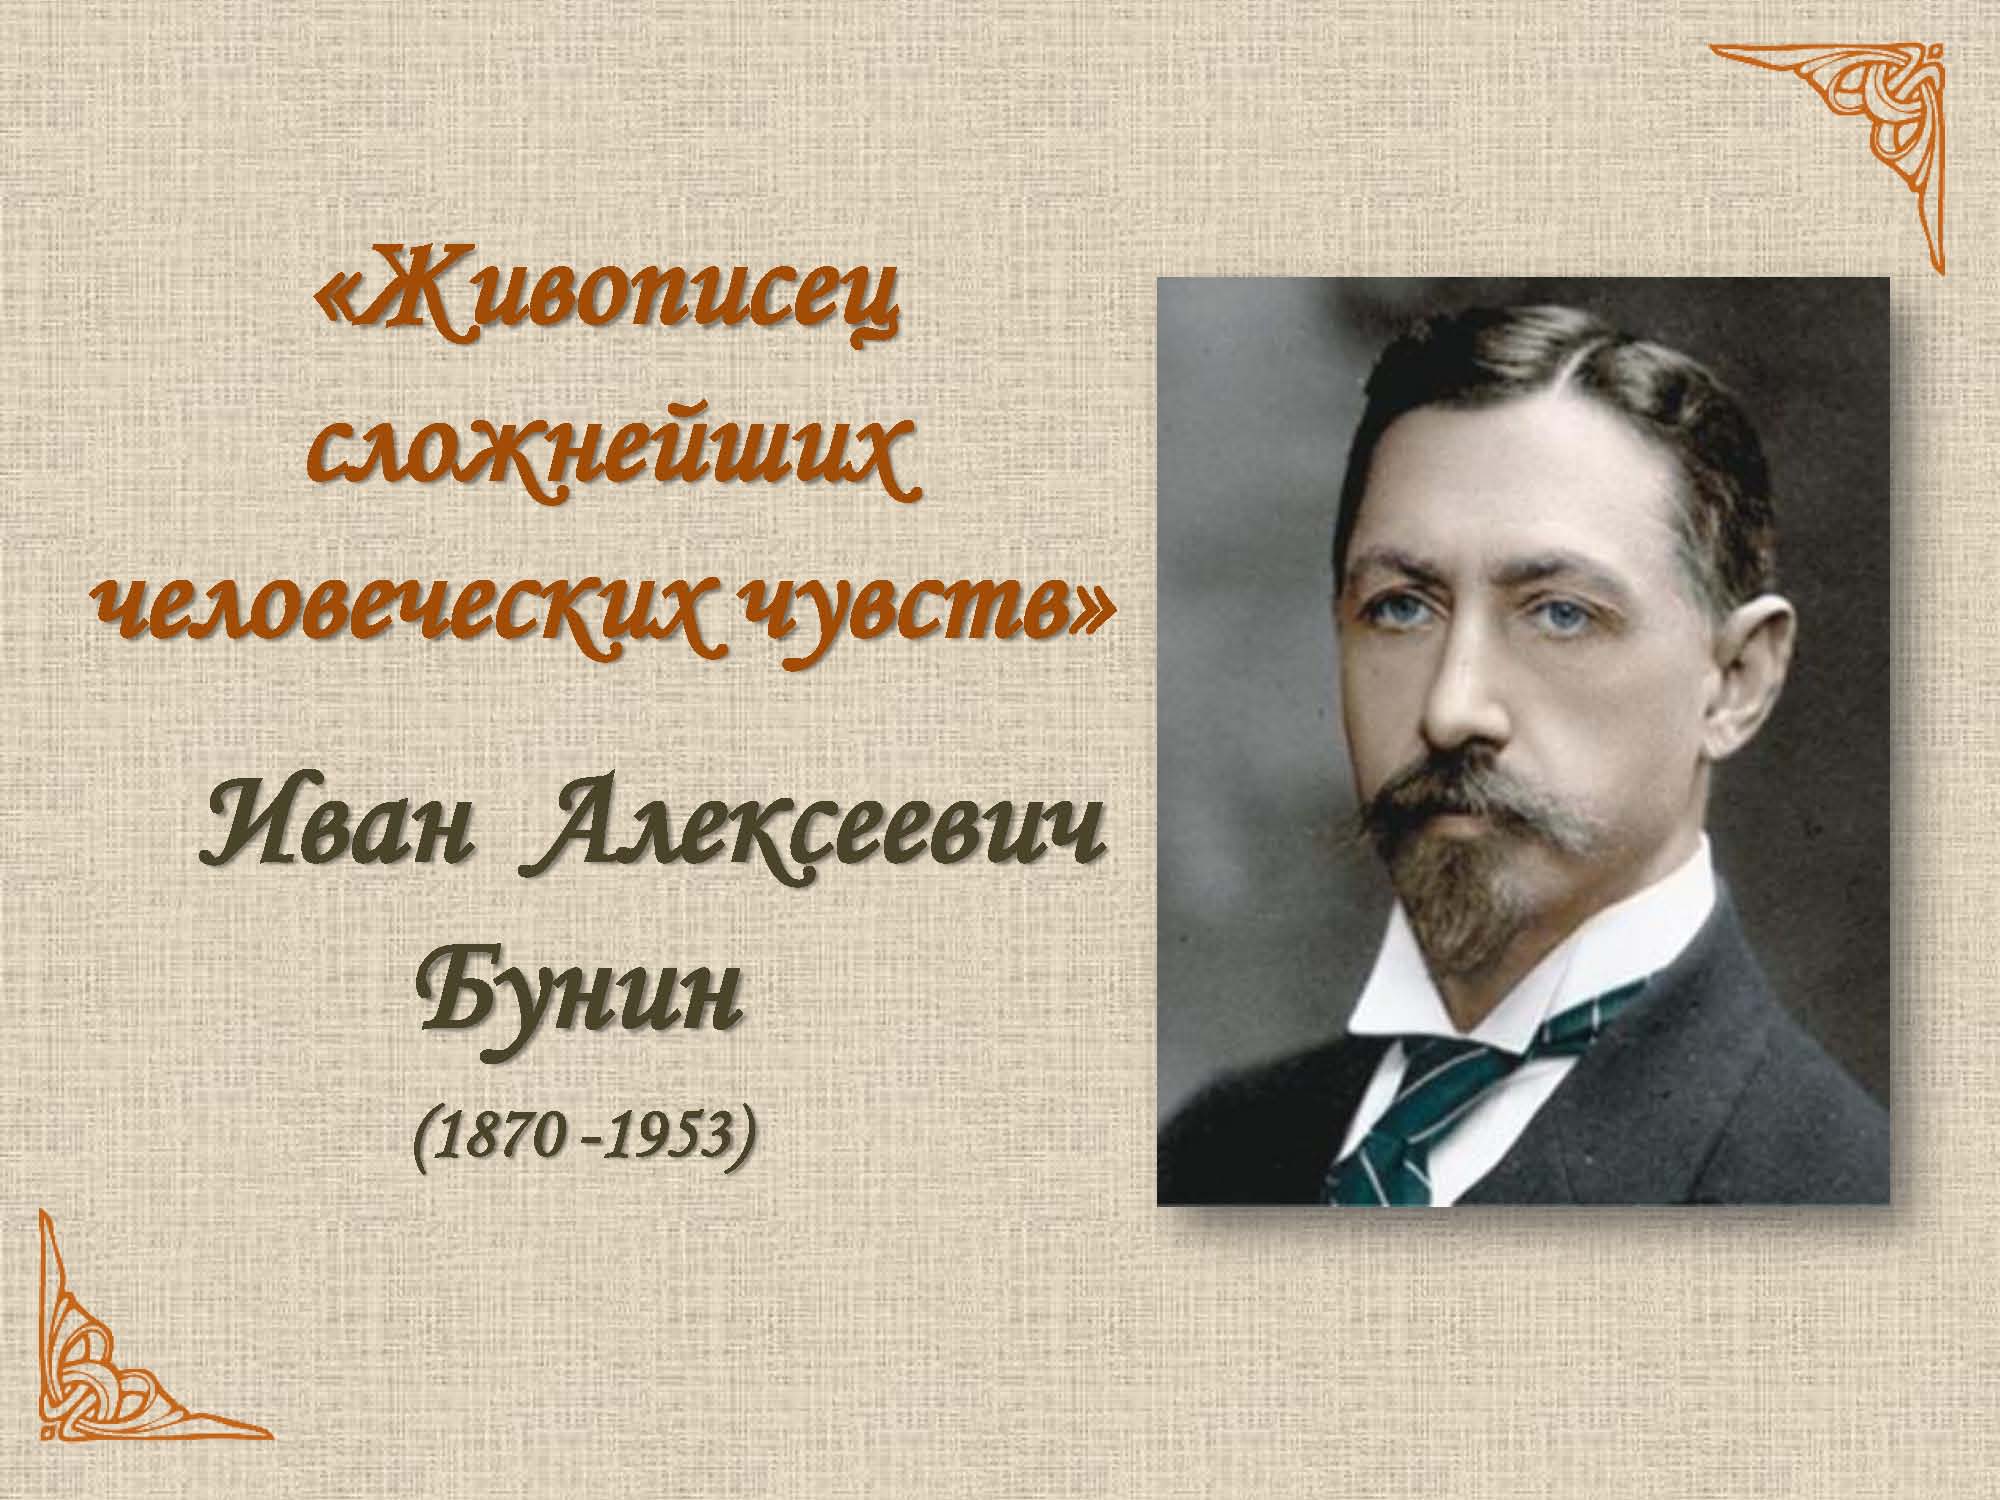 Ivan Alekseevich Bunin